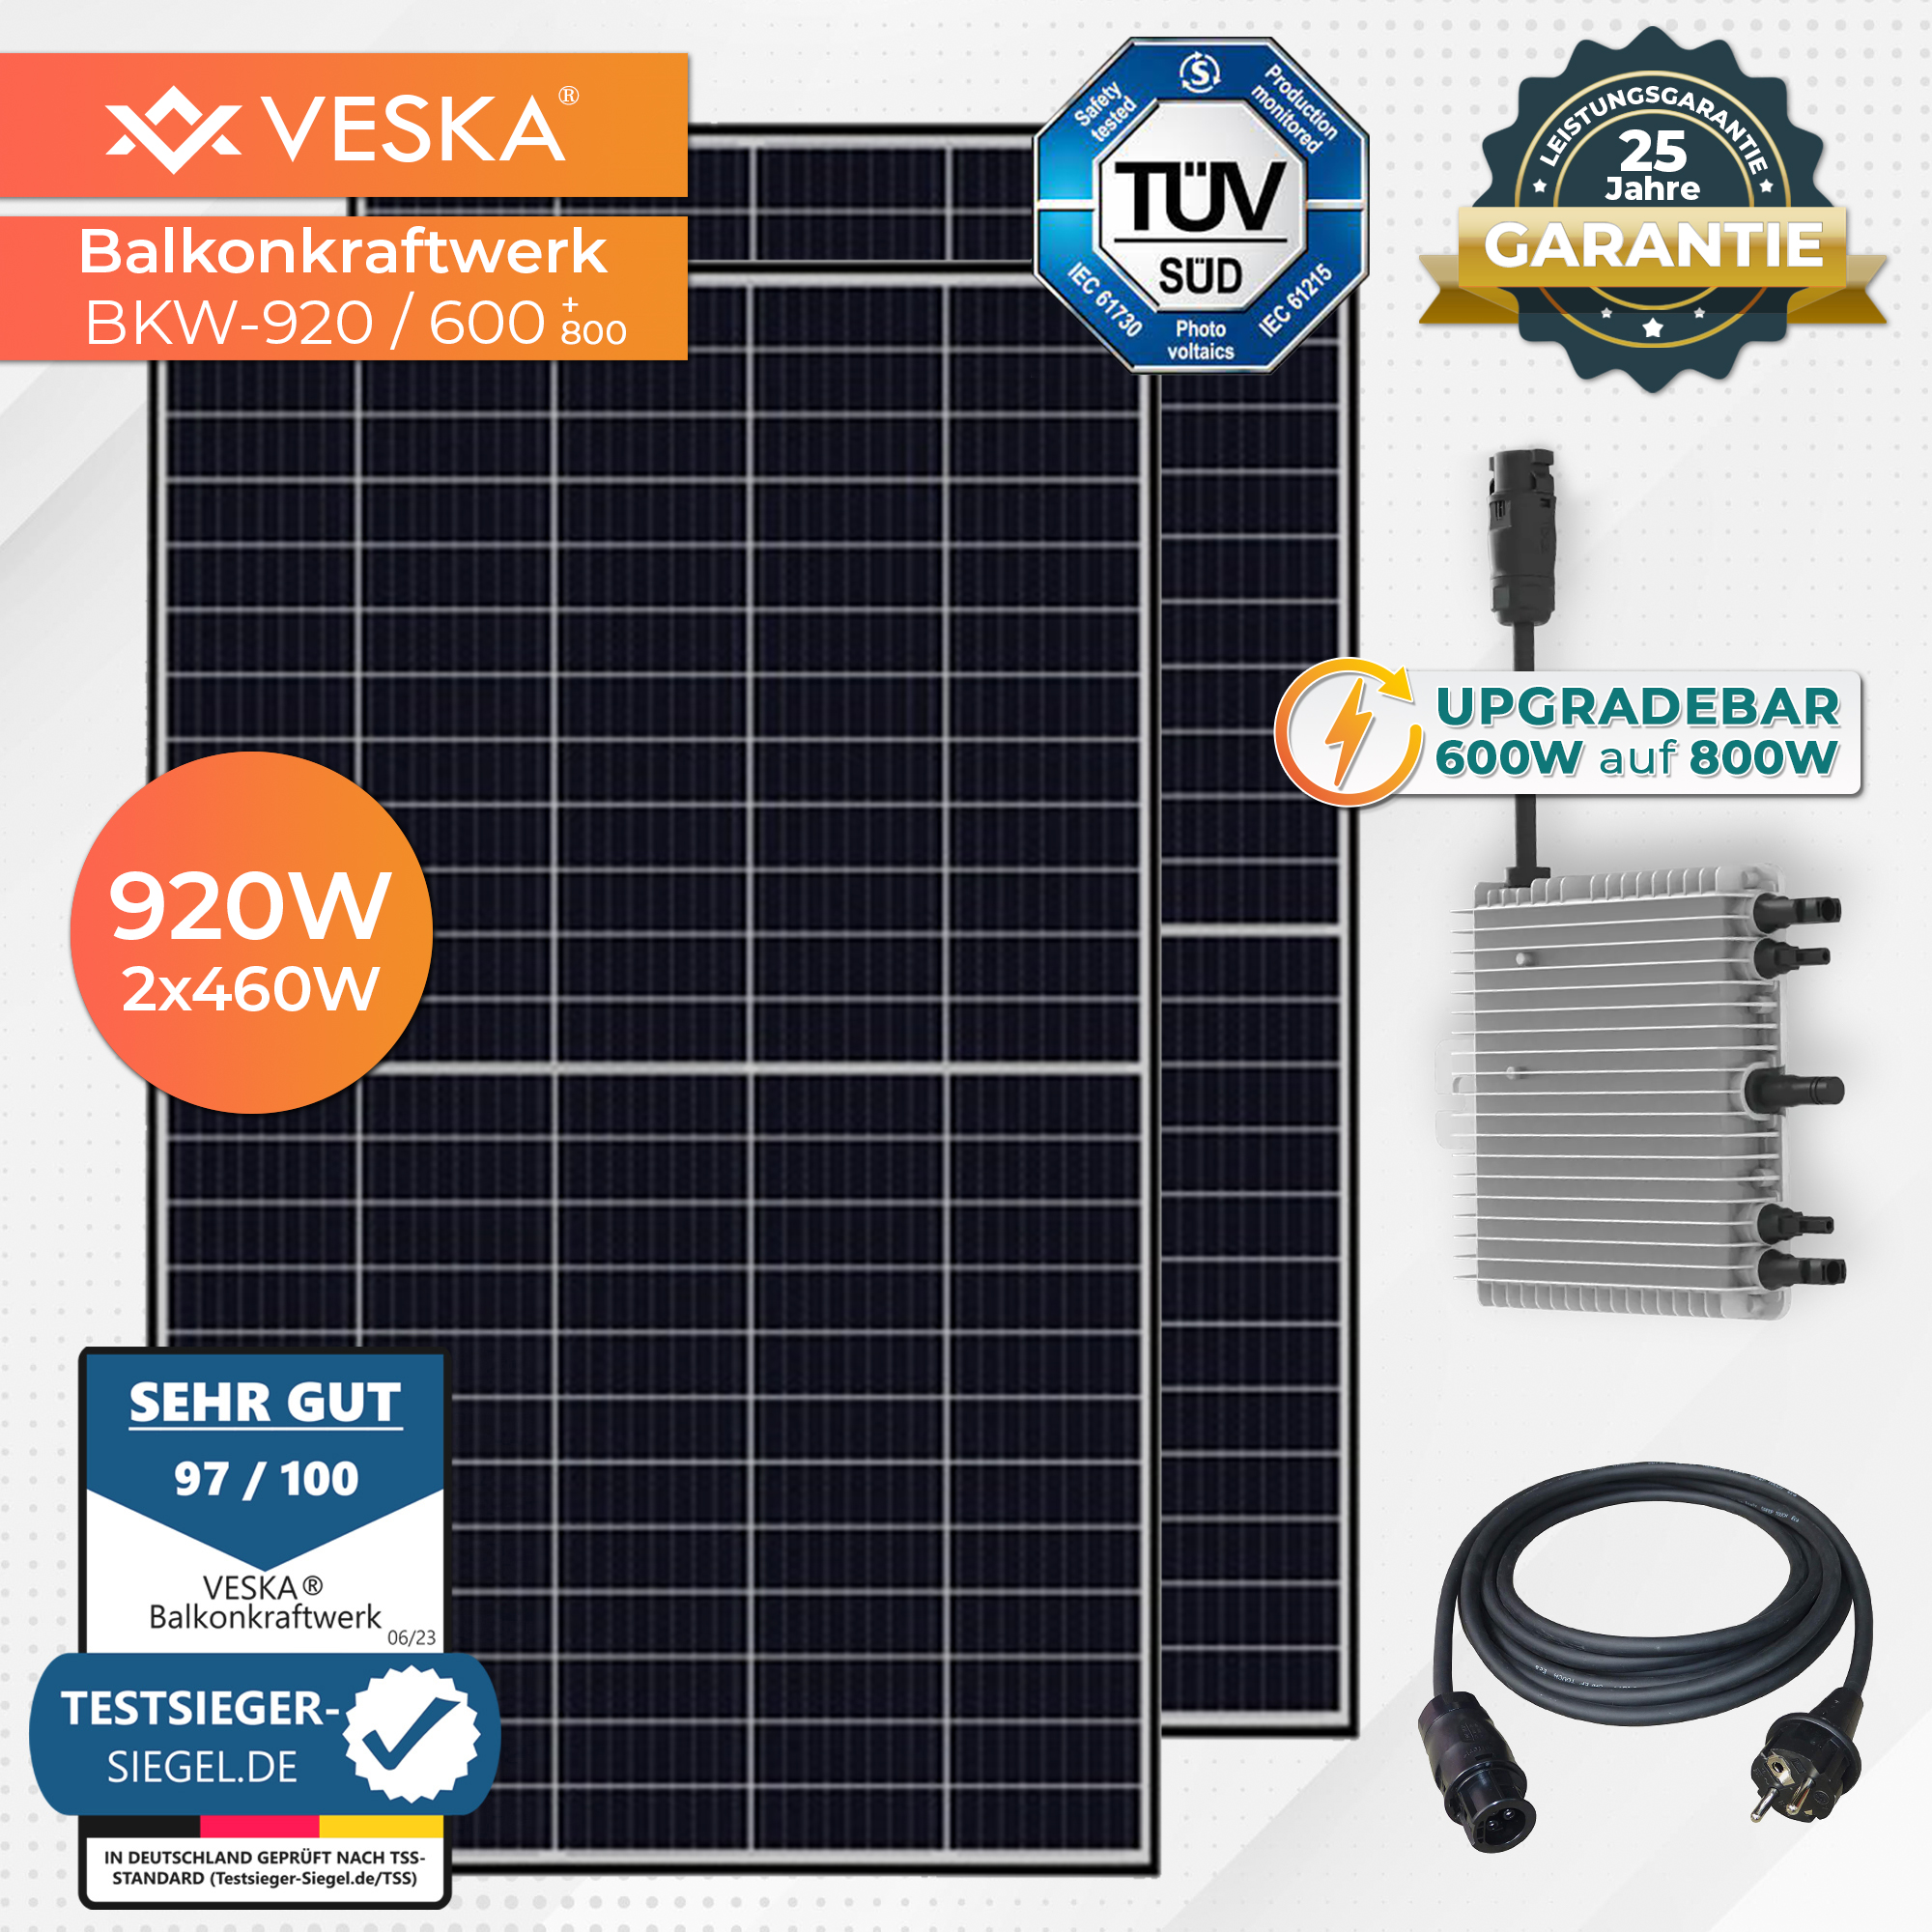 VESKA (upgradebar PV 800W) auf Balkon-Solaranlage Komplettset 920W/600W